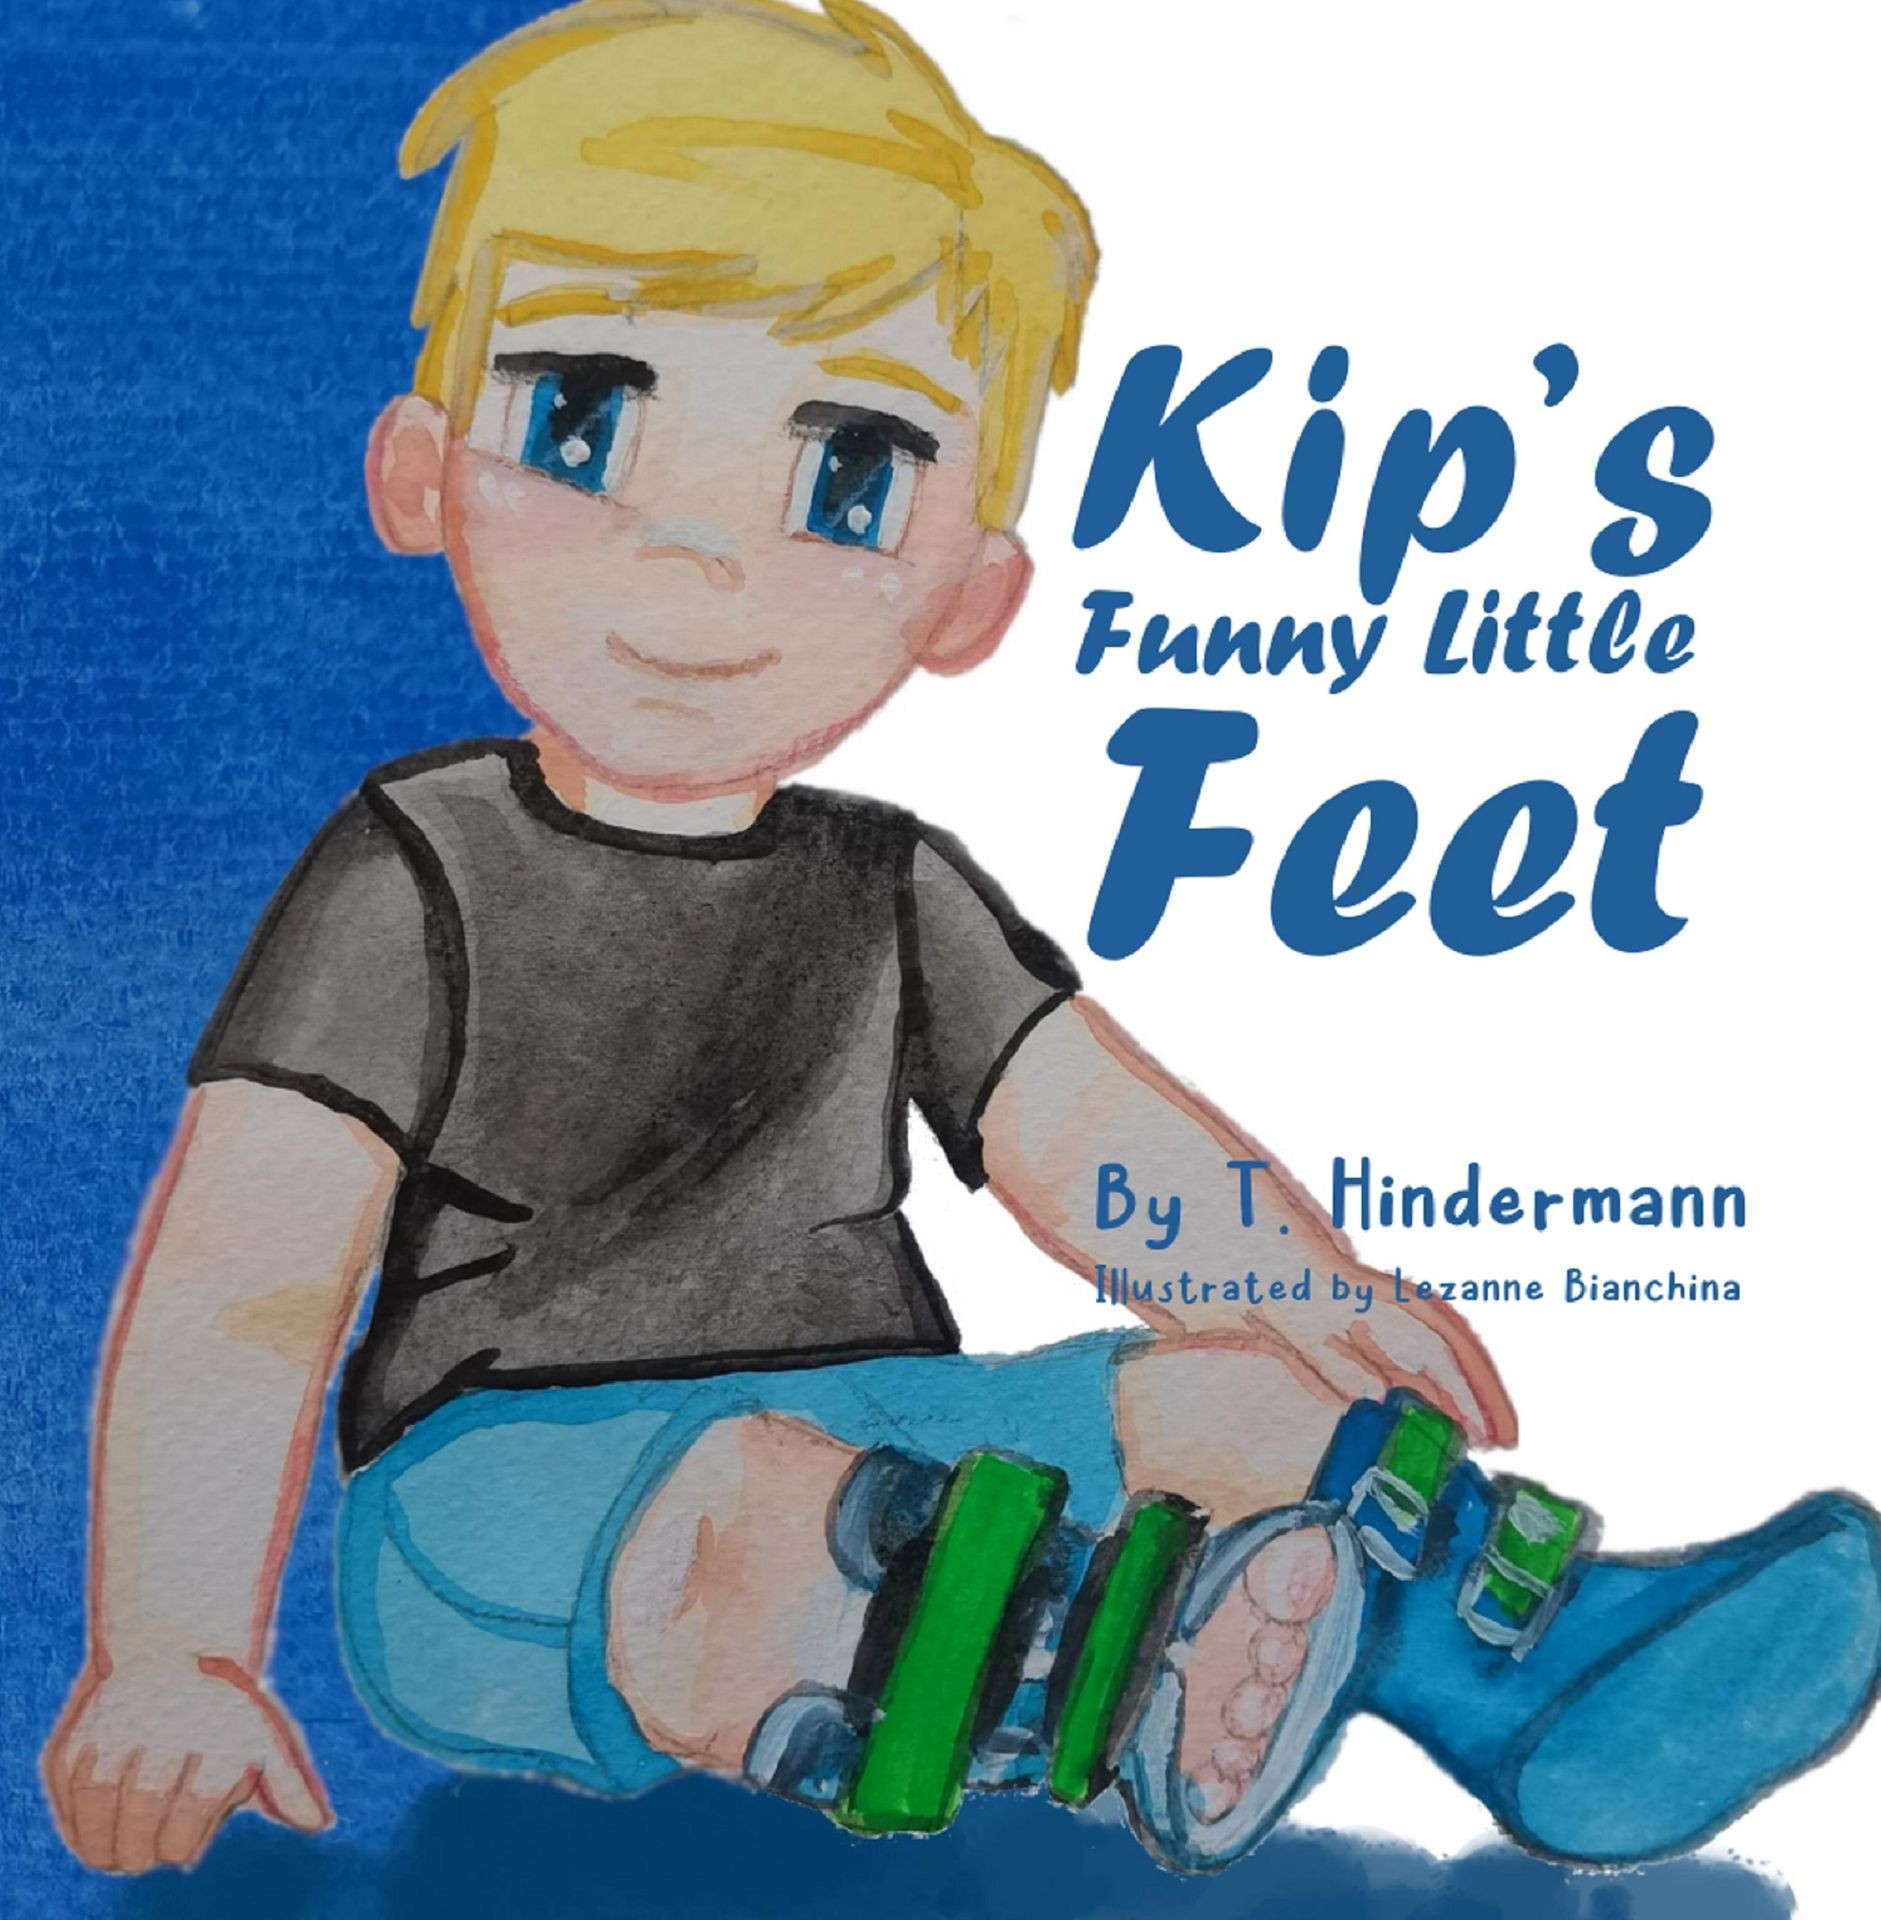 Kip's Funny Little Feet Ebook